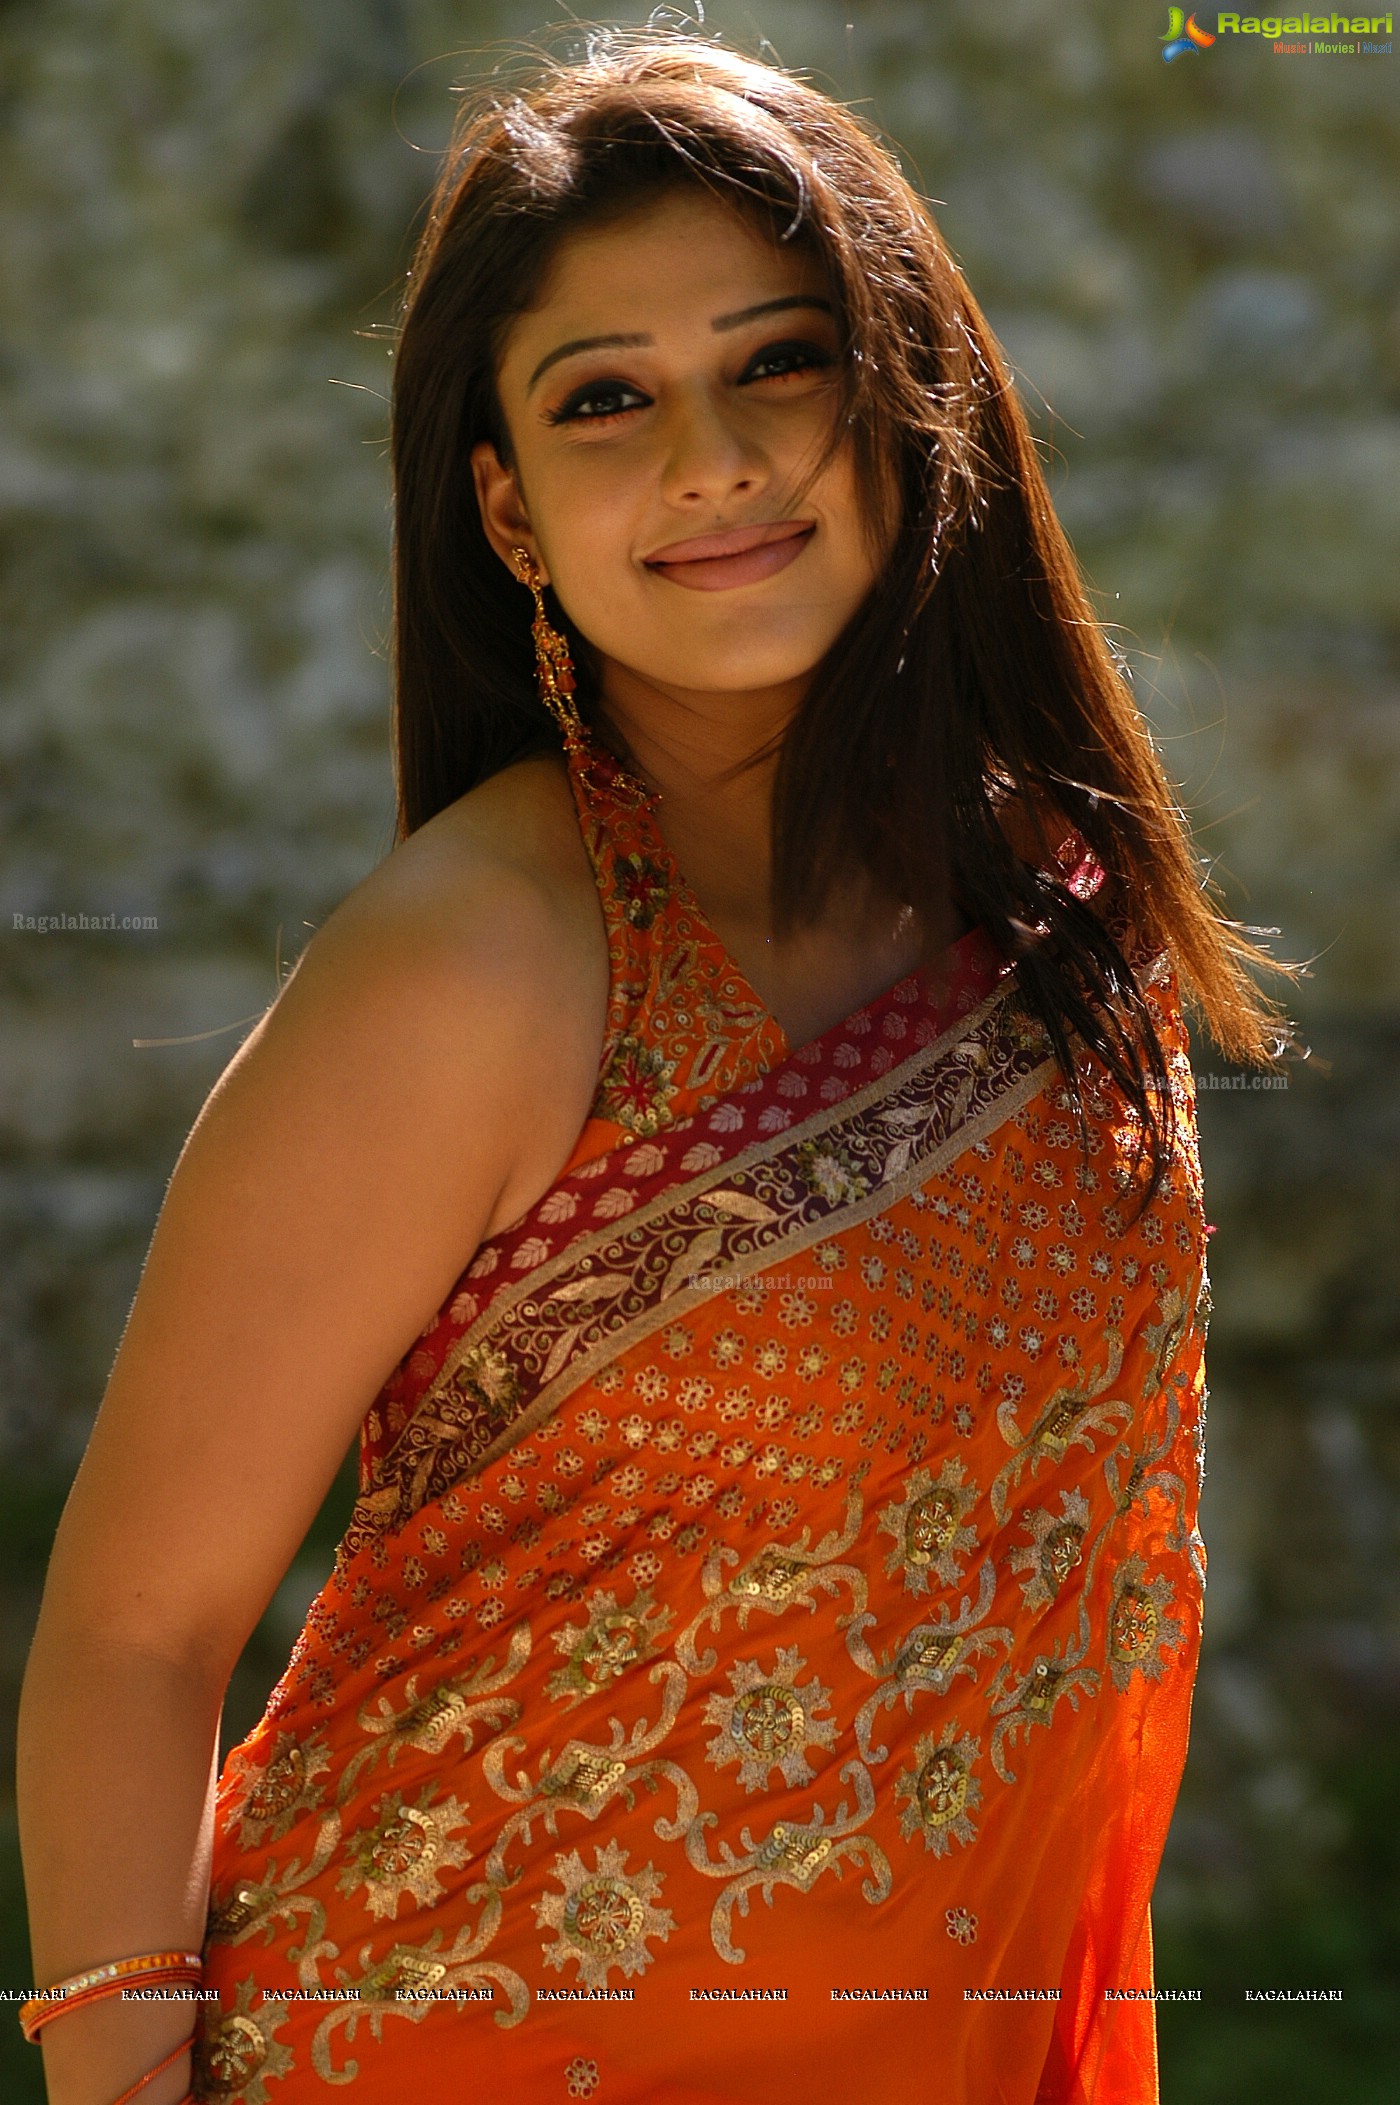 Nayanthara Hot in Orange Saree, Photo gallery, Images